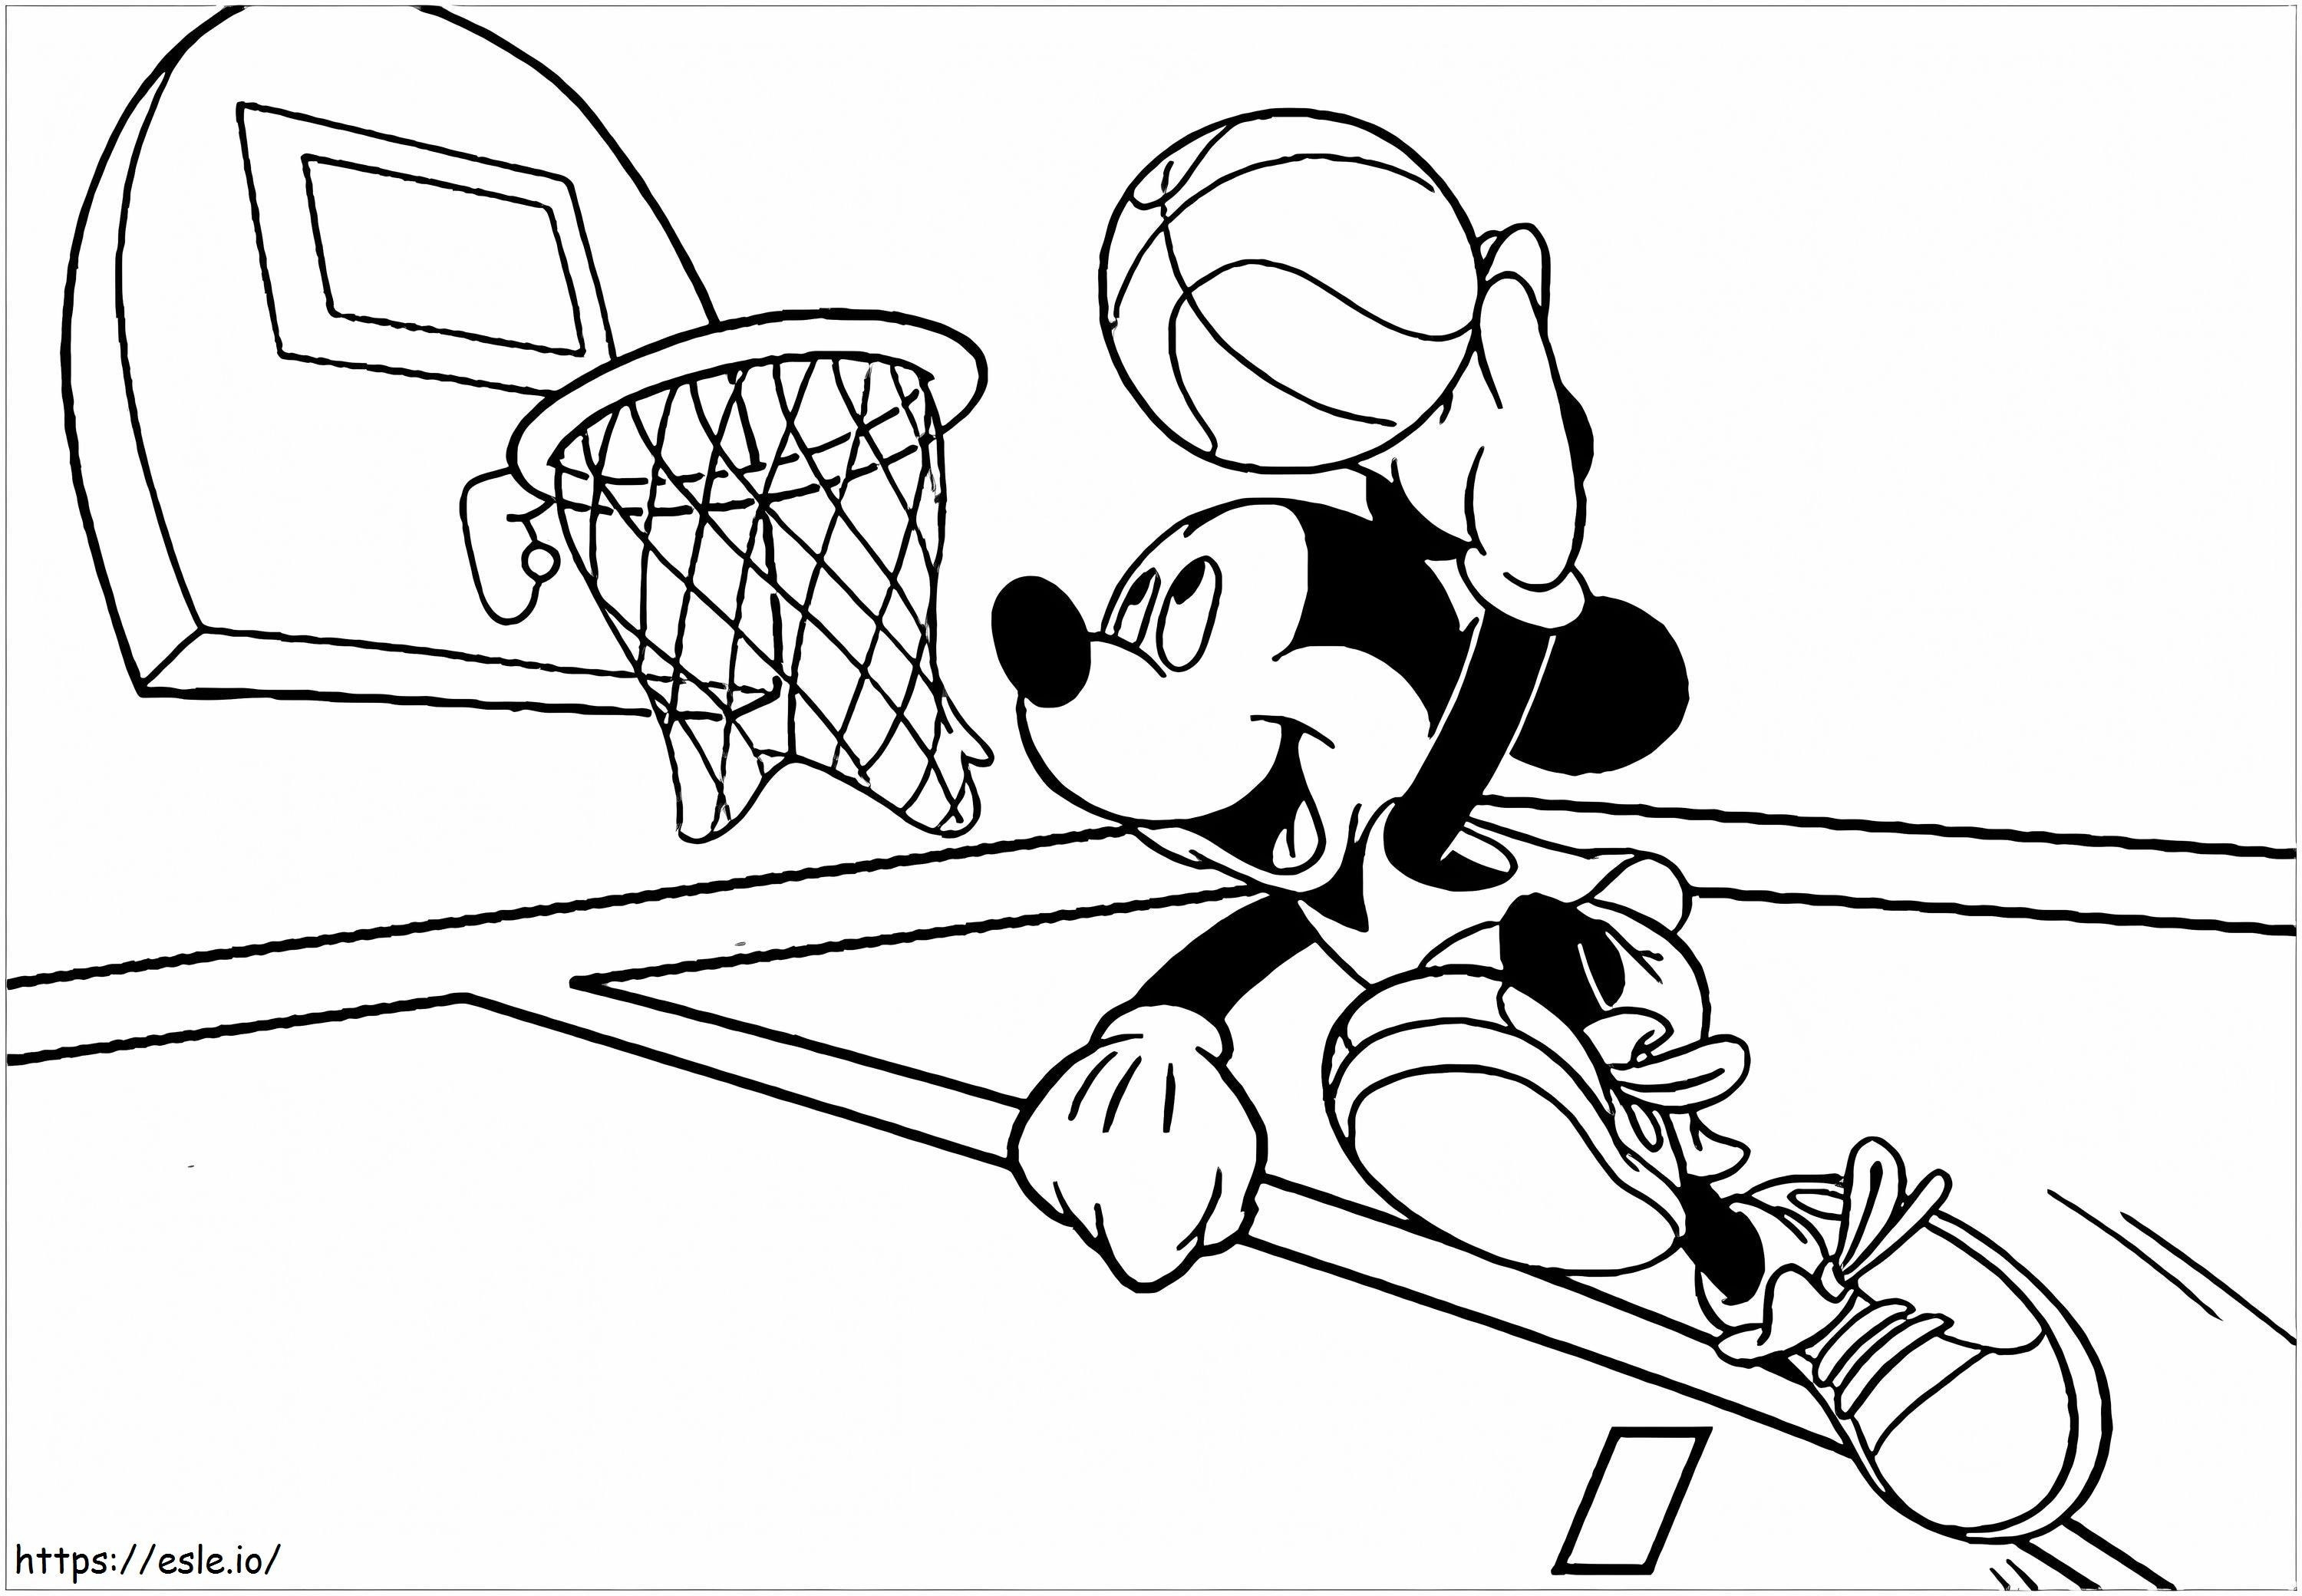 Miki skacze podczas gry w koszykówkę kolorowanka